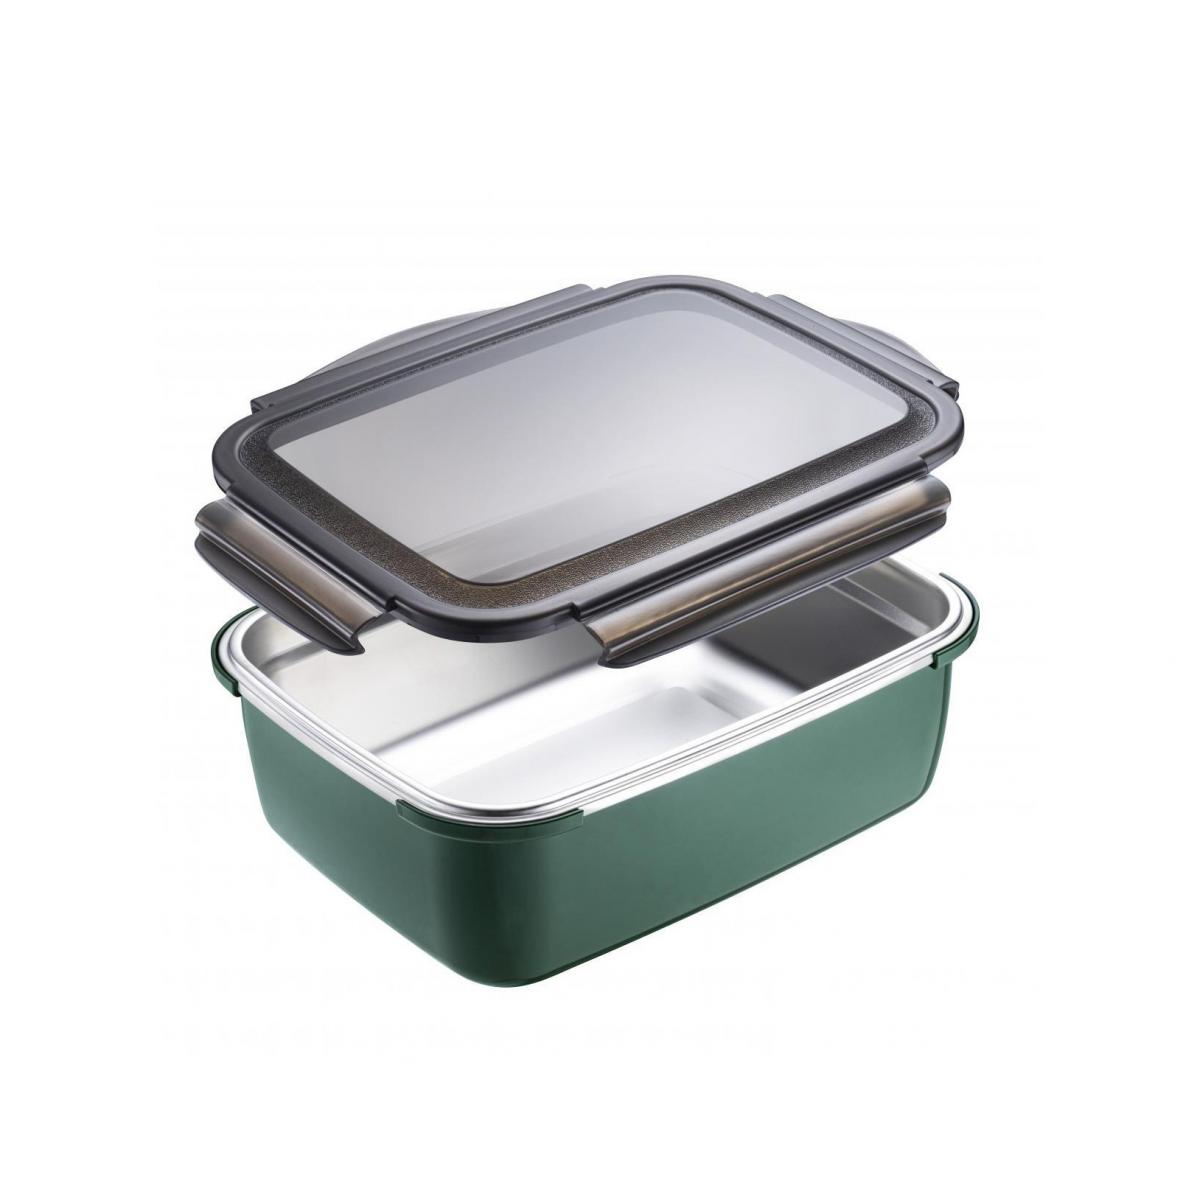 550ml 不銹鋼微波爐食物盒 (綠)